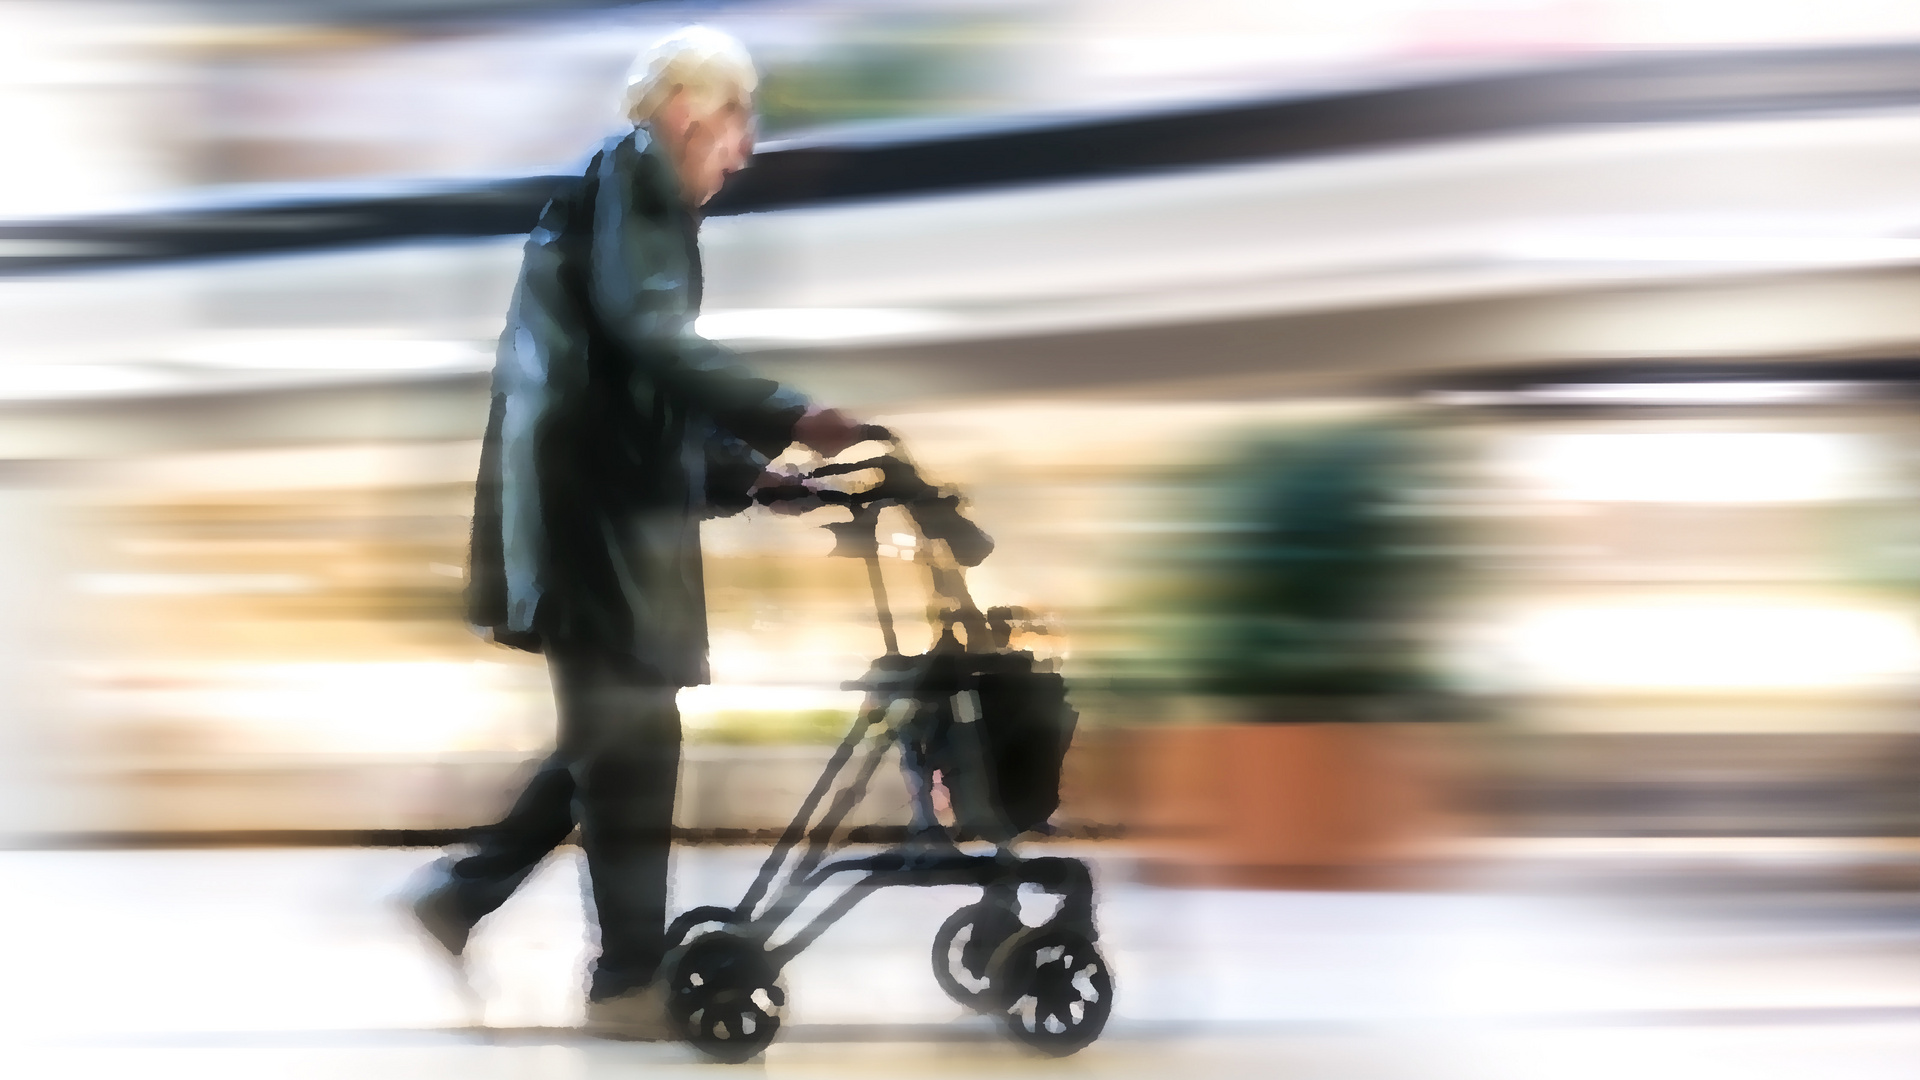 Mobilität im Alter